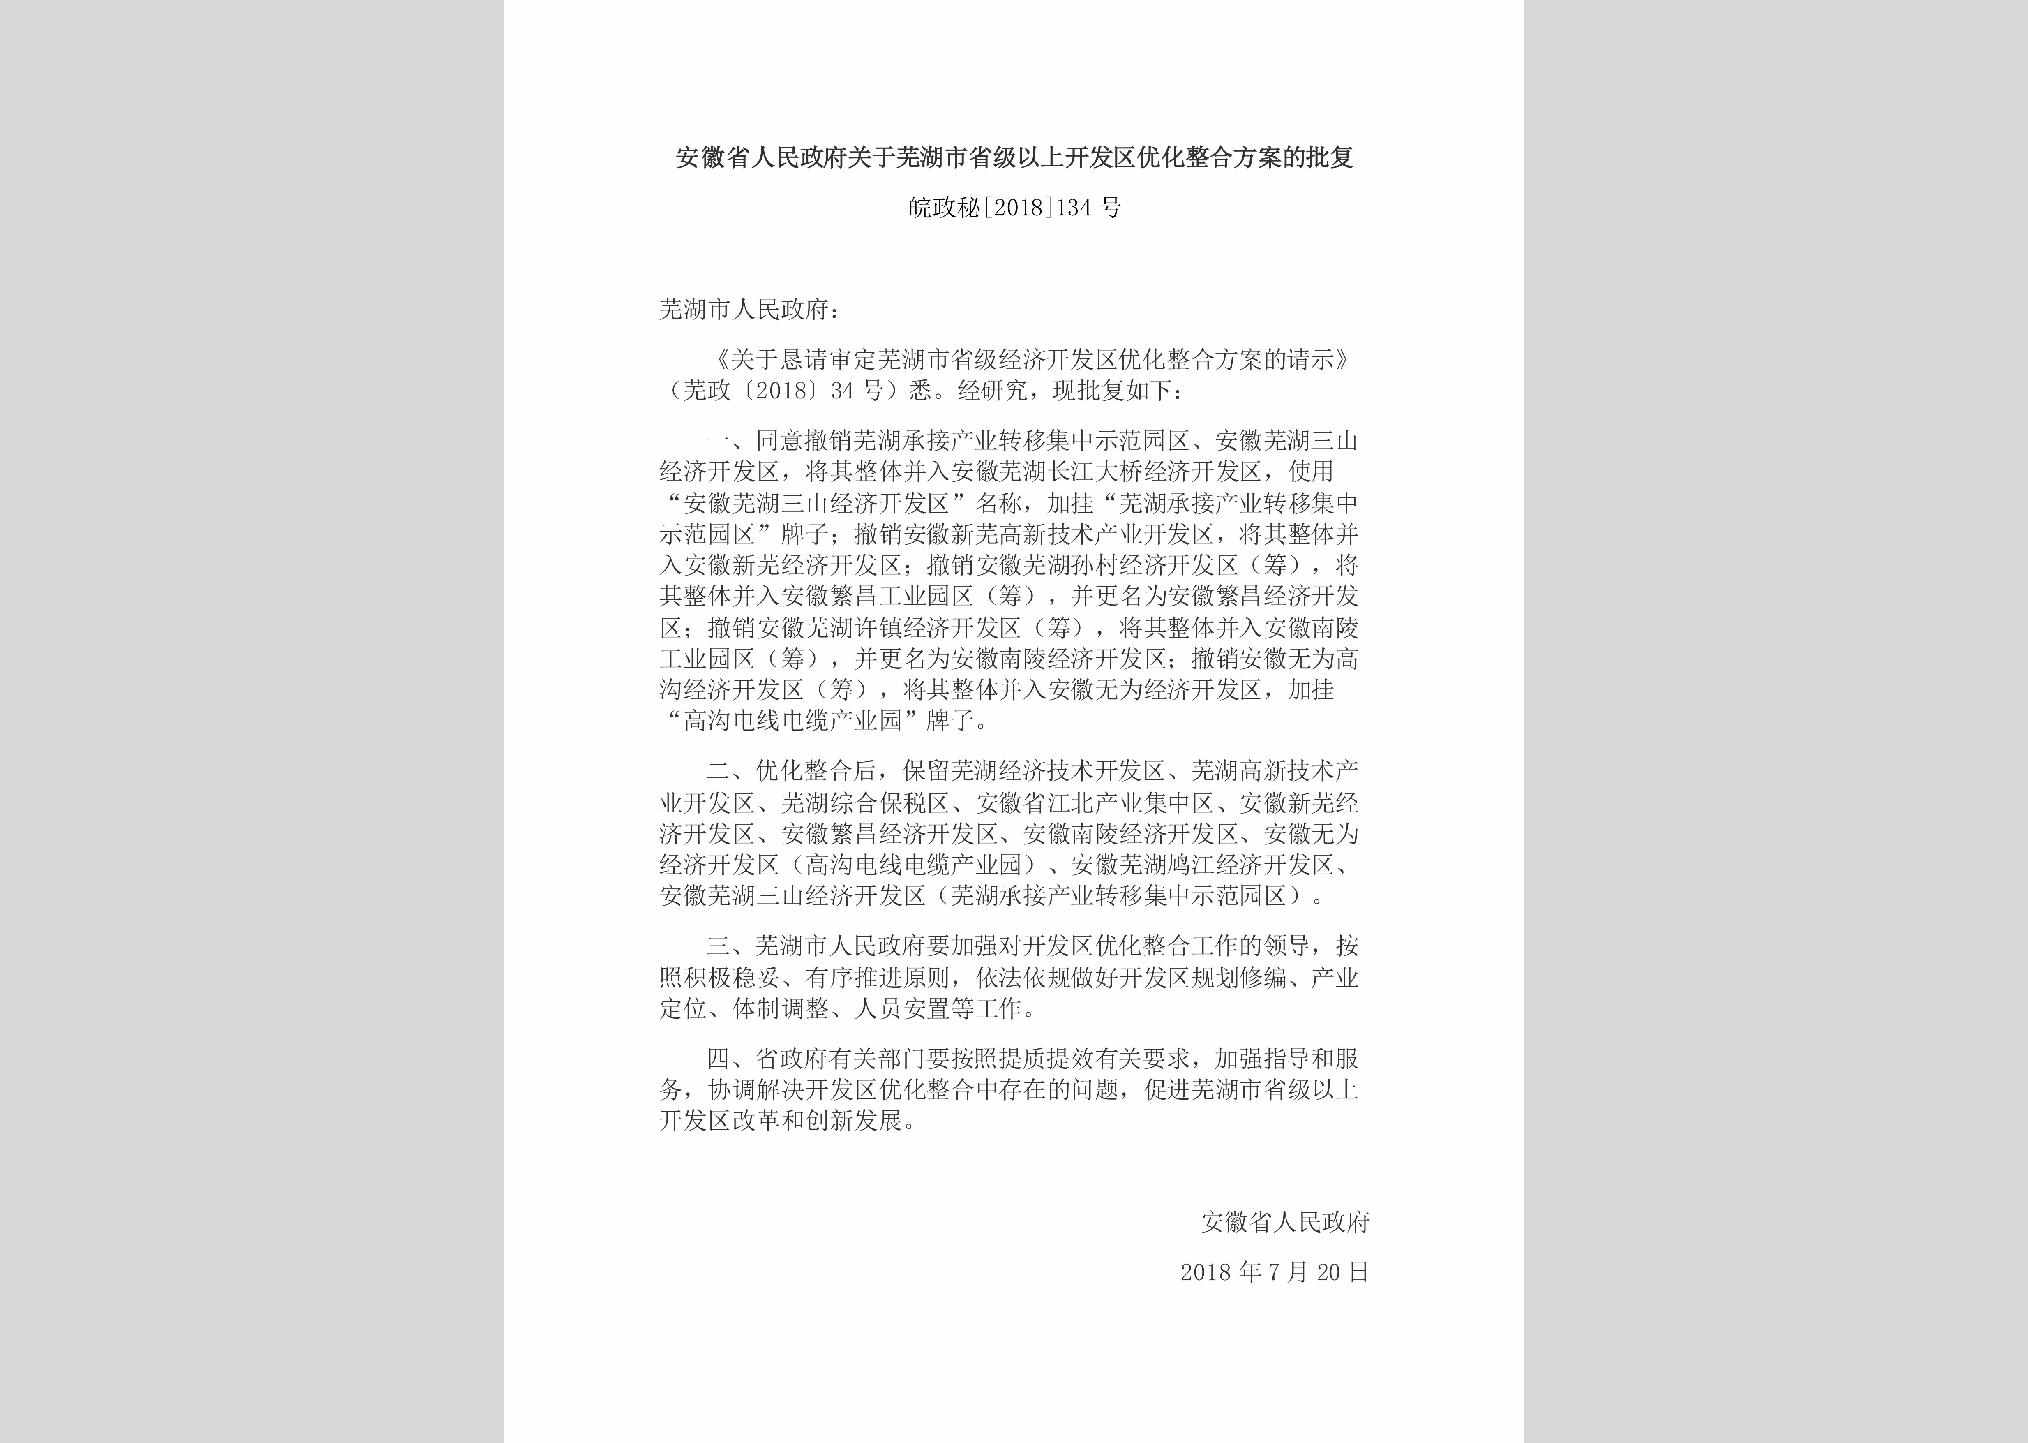 皖政秘[2018]134号：安徽省人民政府关于芜湖市省级以上开发区优化整合方案的批复